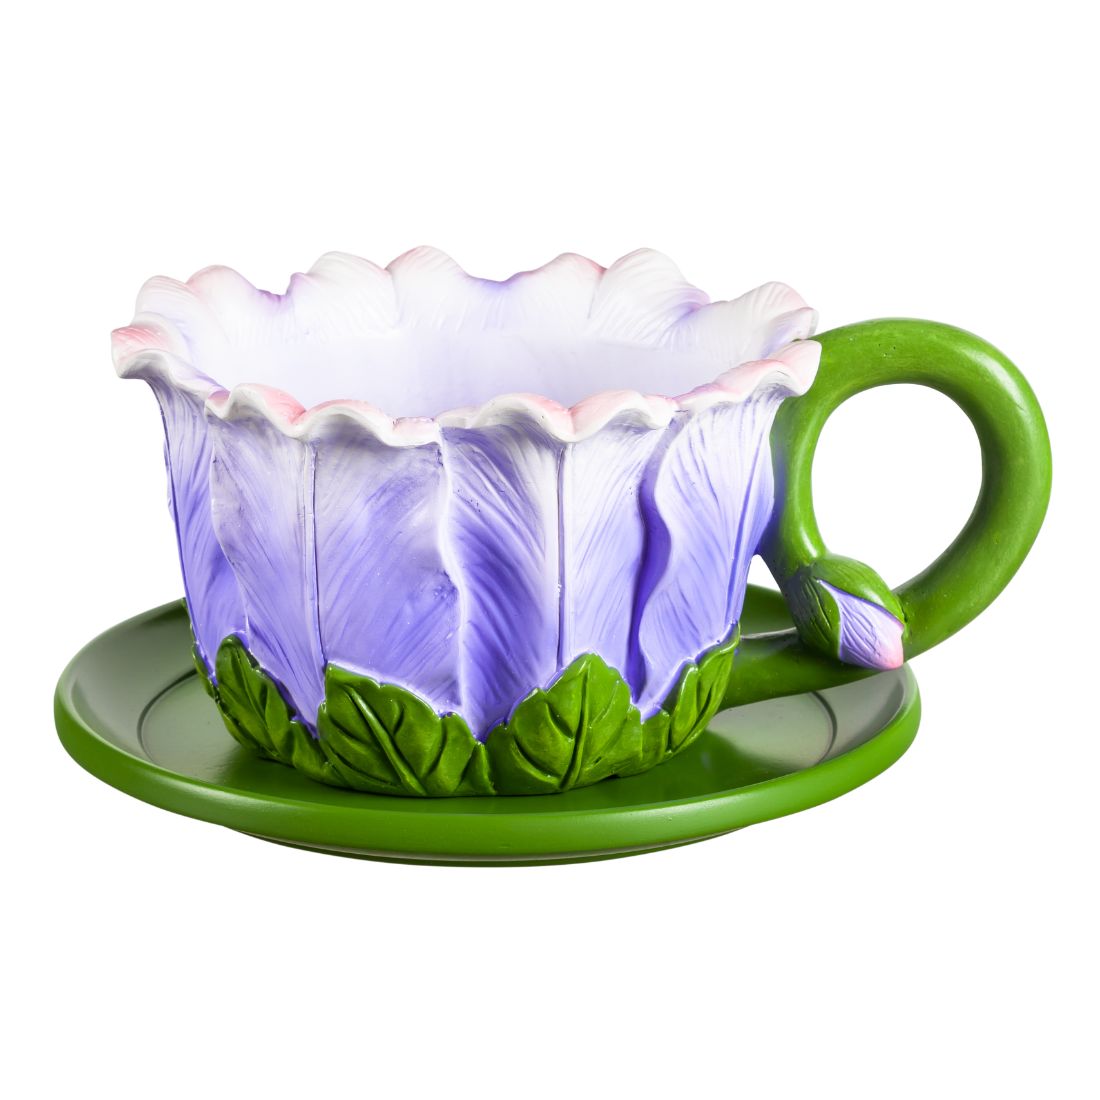 Flower Teacup Planters, Purple